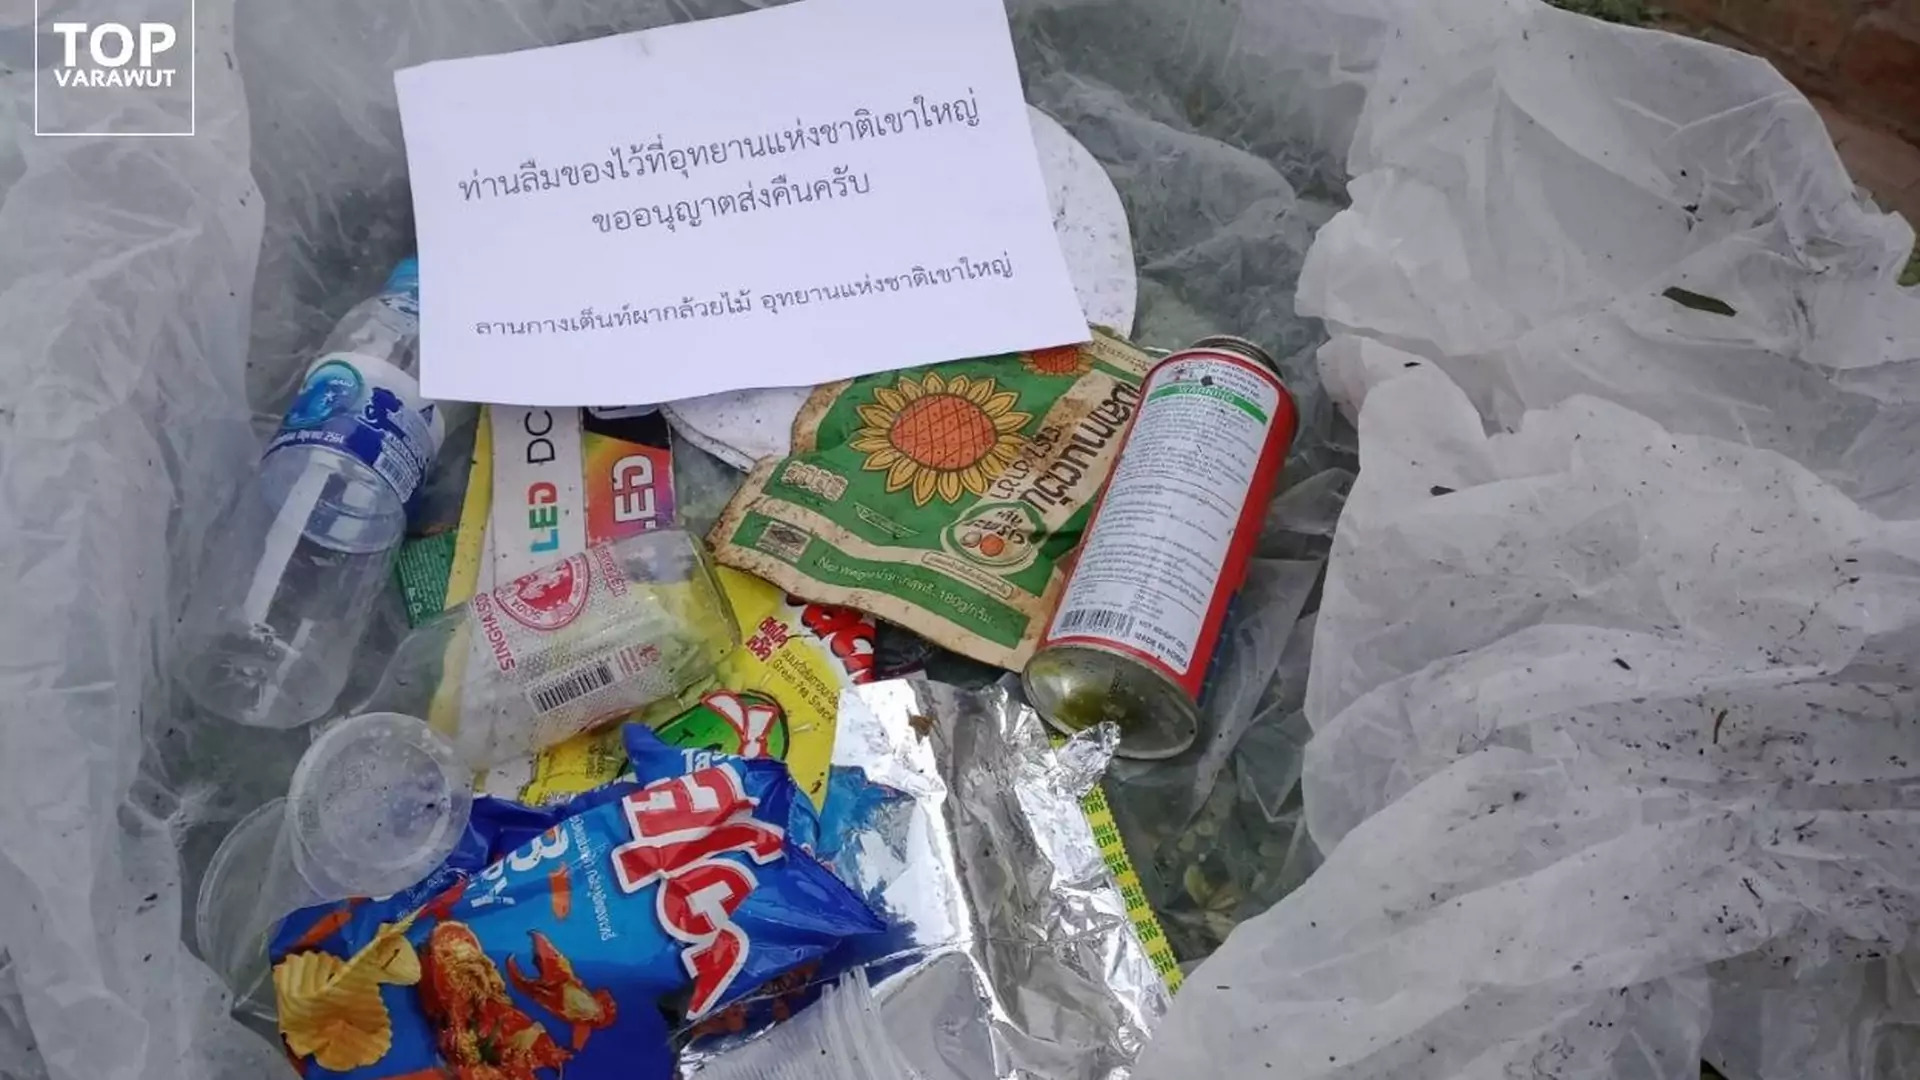 Park Narodowy w Tajlandii odsyła turystom śmieci. Dołącza mandat i wstydliwą "pocztówkę"